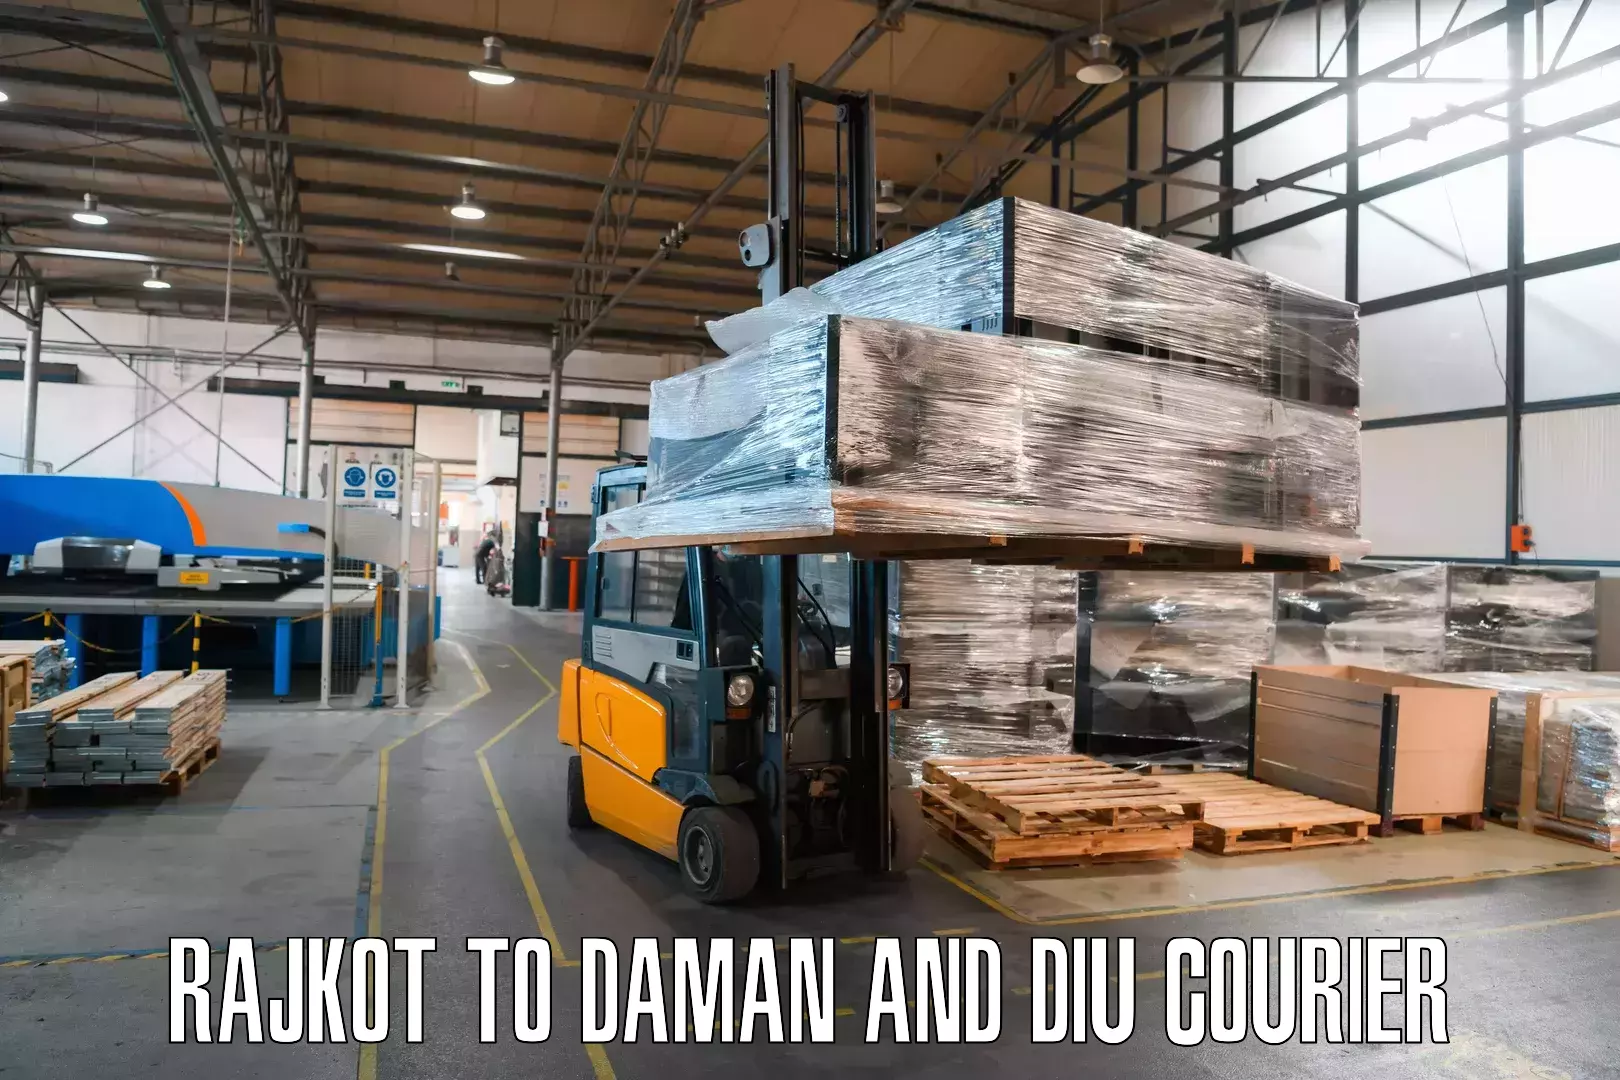 Local courier options Rajkot to Daman and Diu